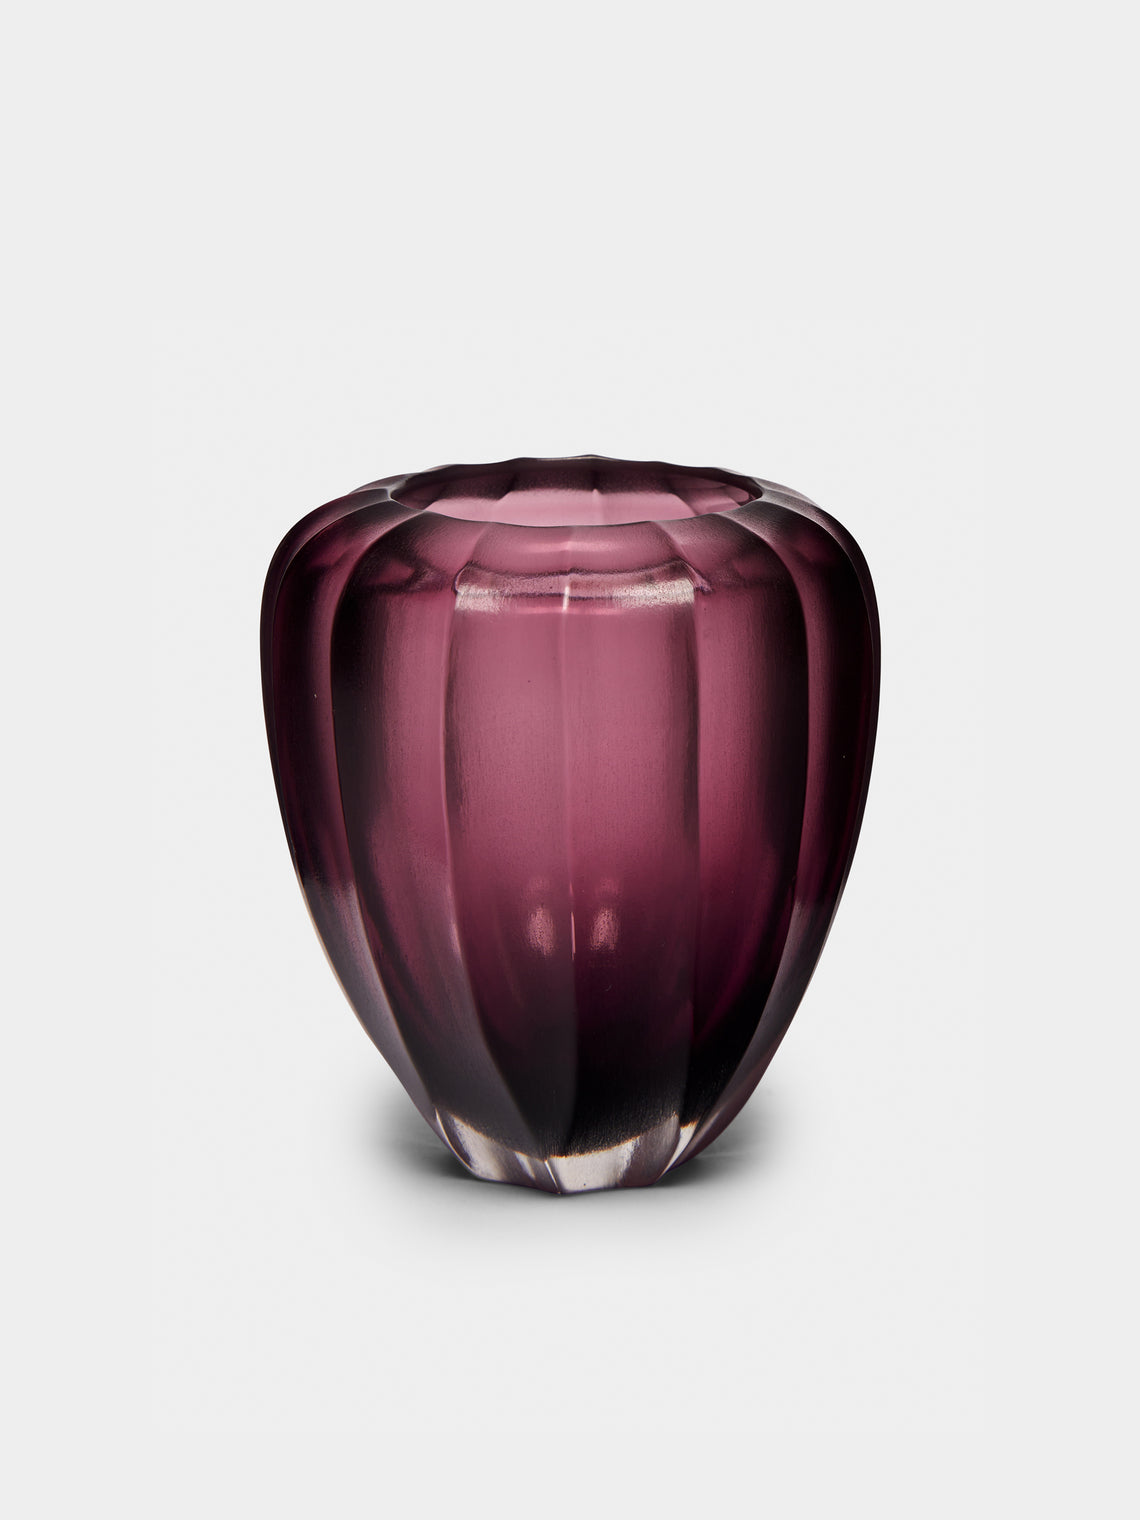 Micheluzzi Glass - Goccia Ametista Hand-Blown Murano Glass Vase - Purple - ABASK - 